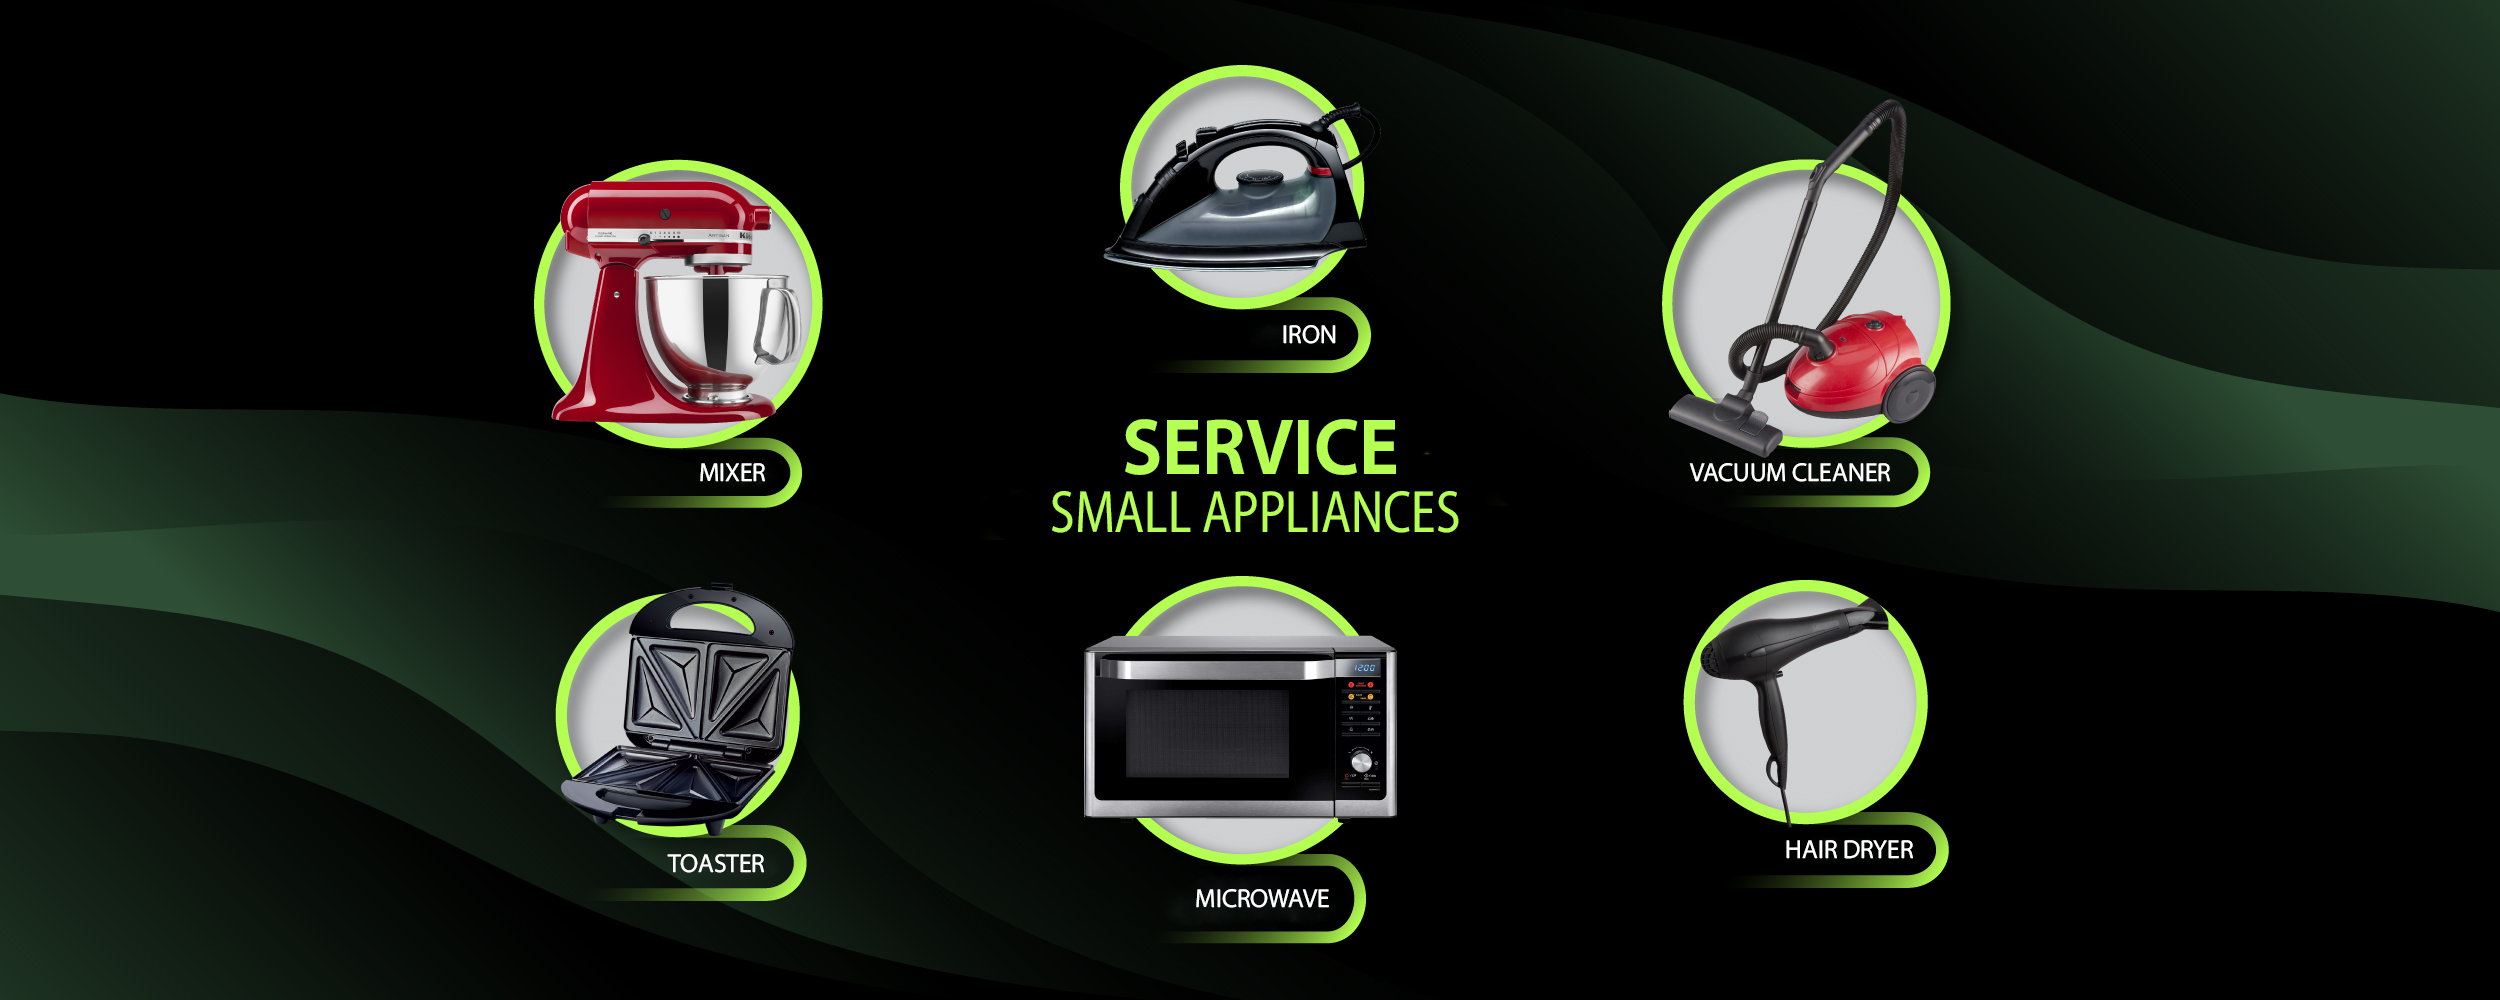 Small Appliances Service